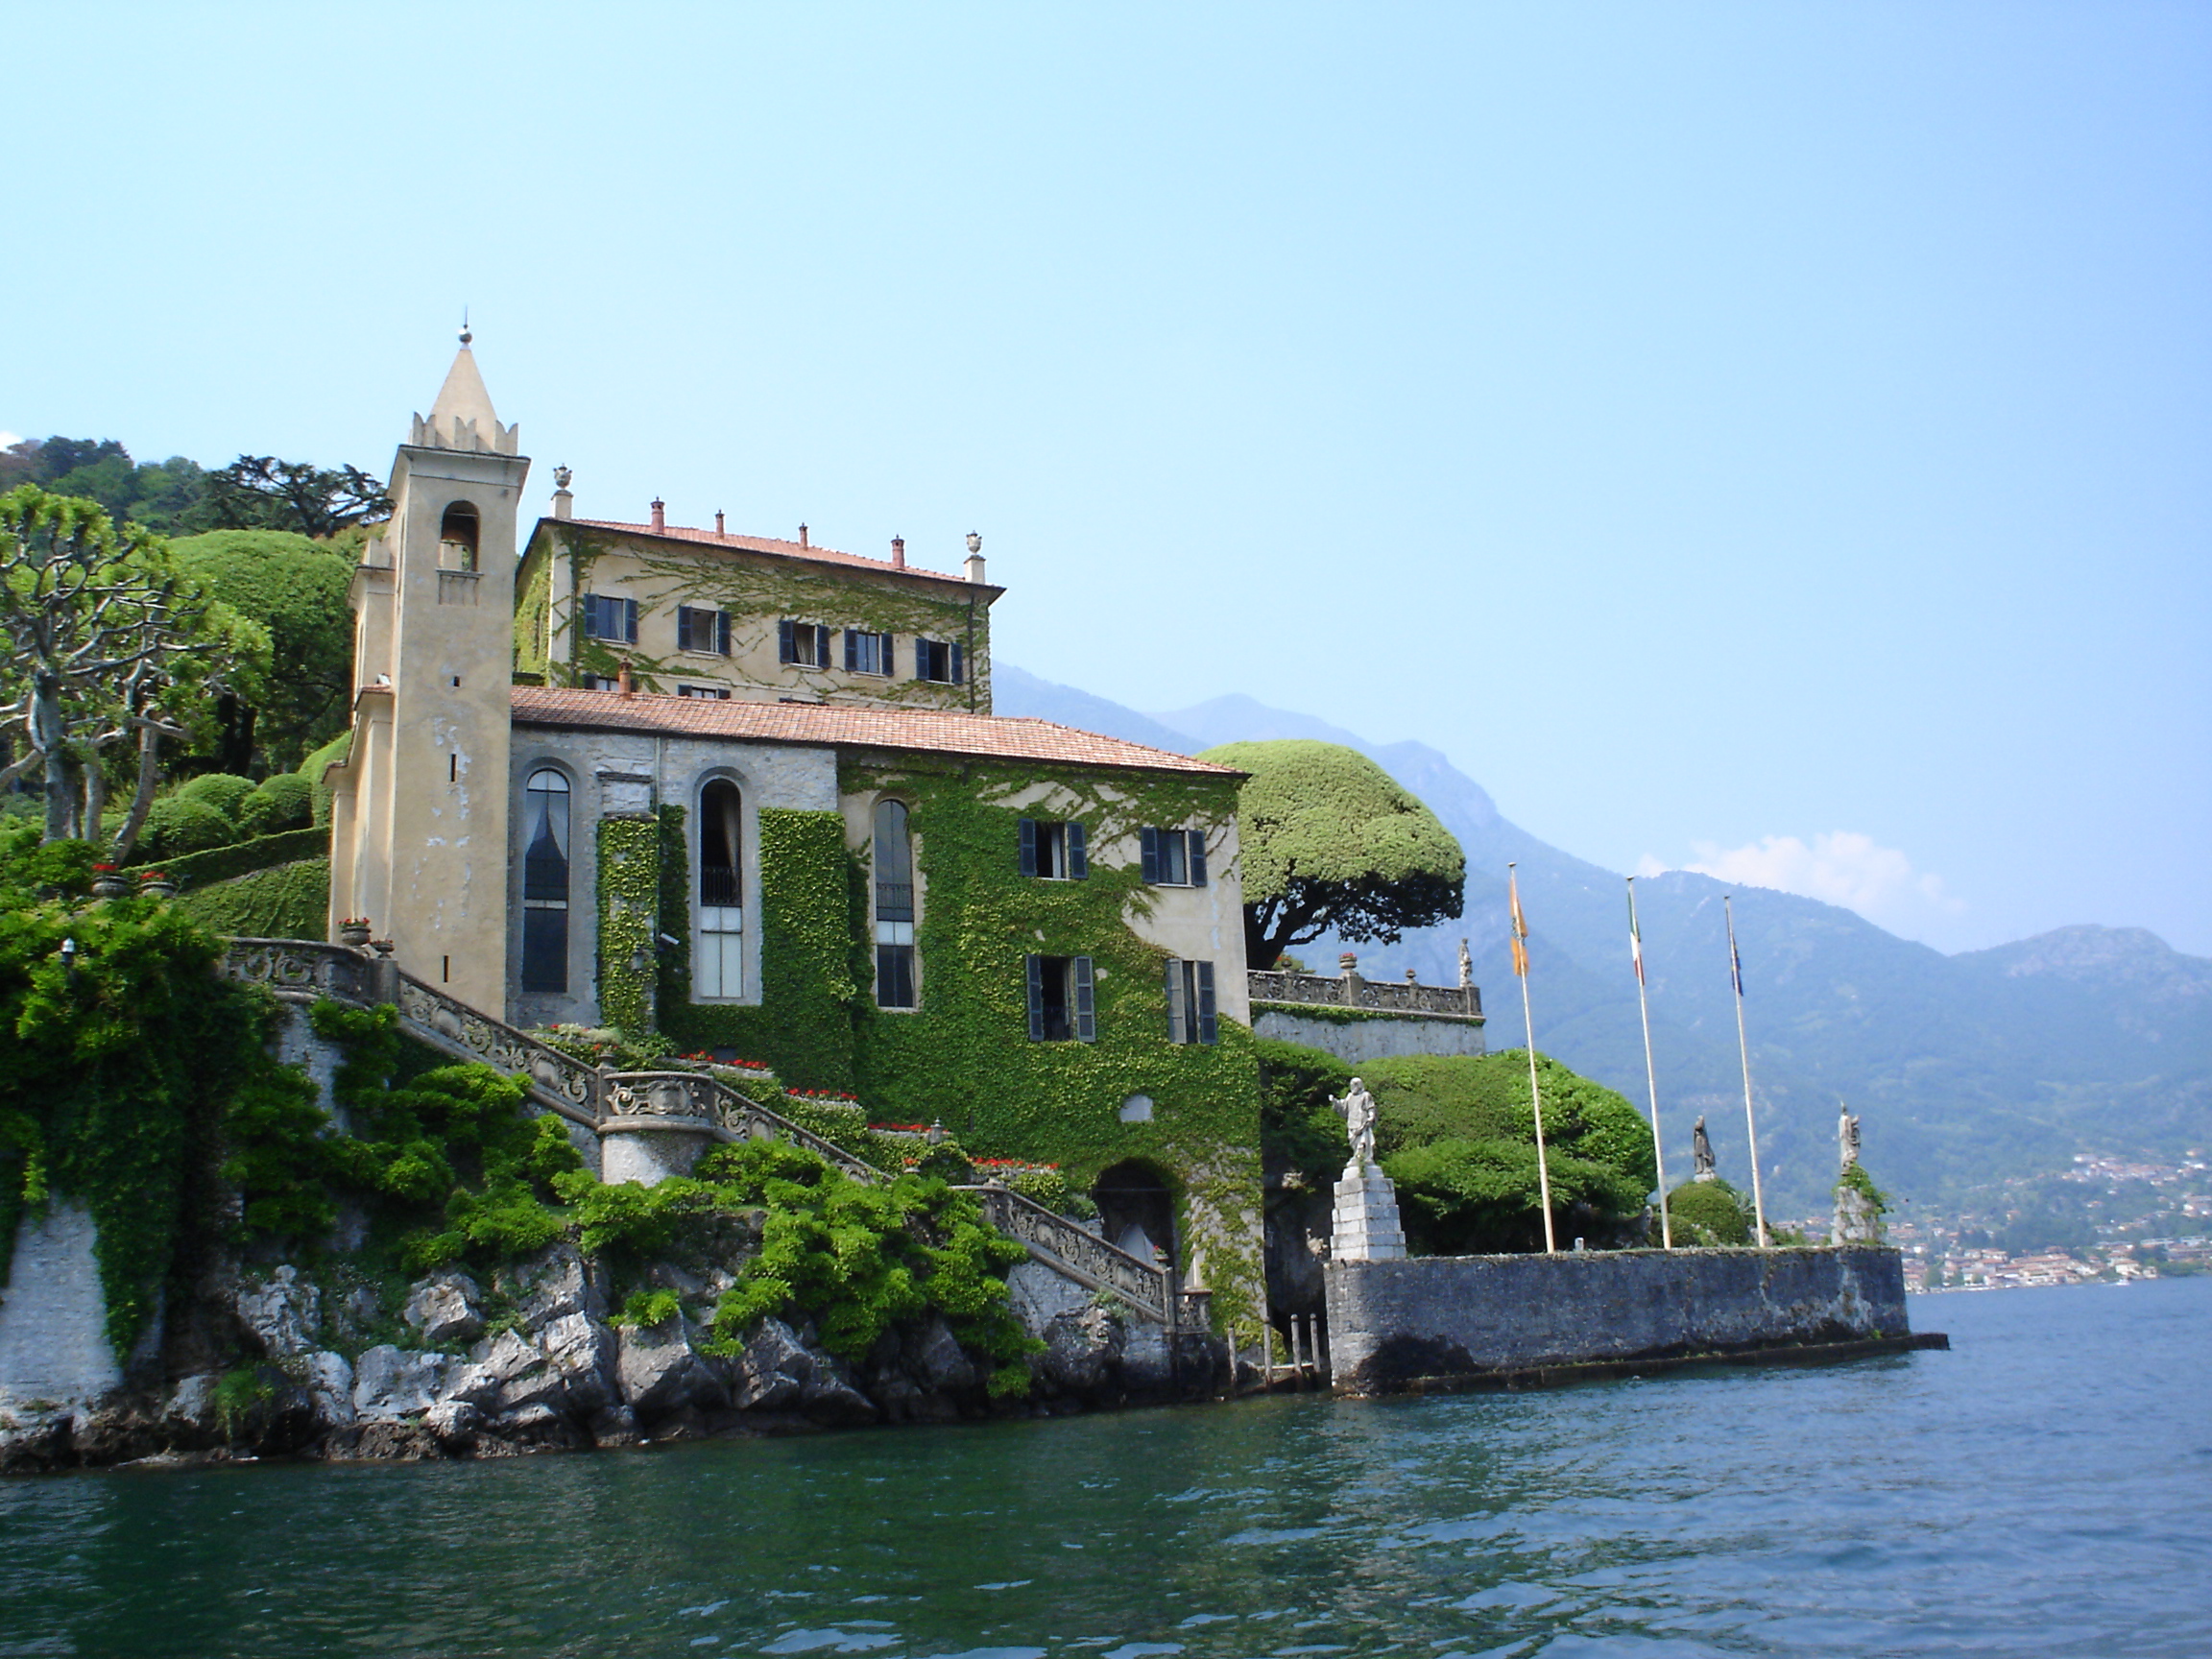 Cinema & Lake Como: A month by the lake